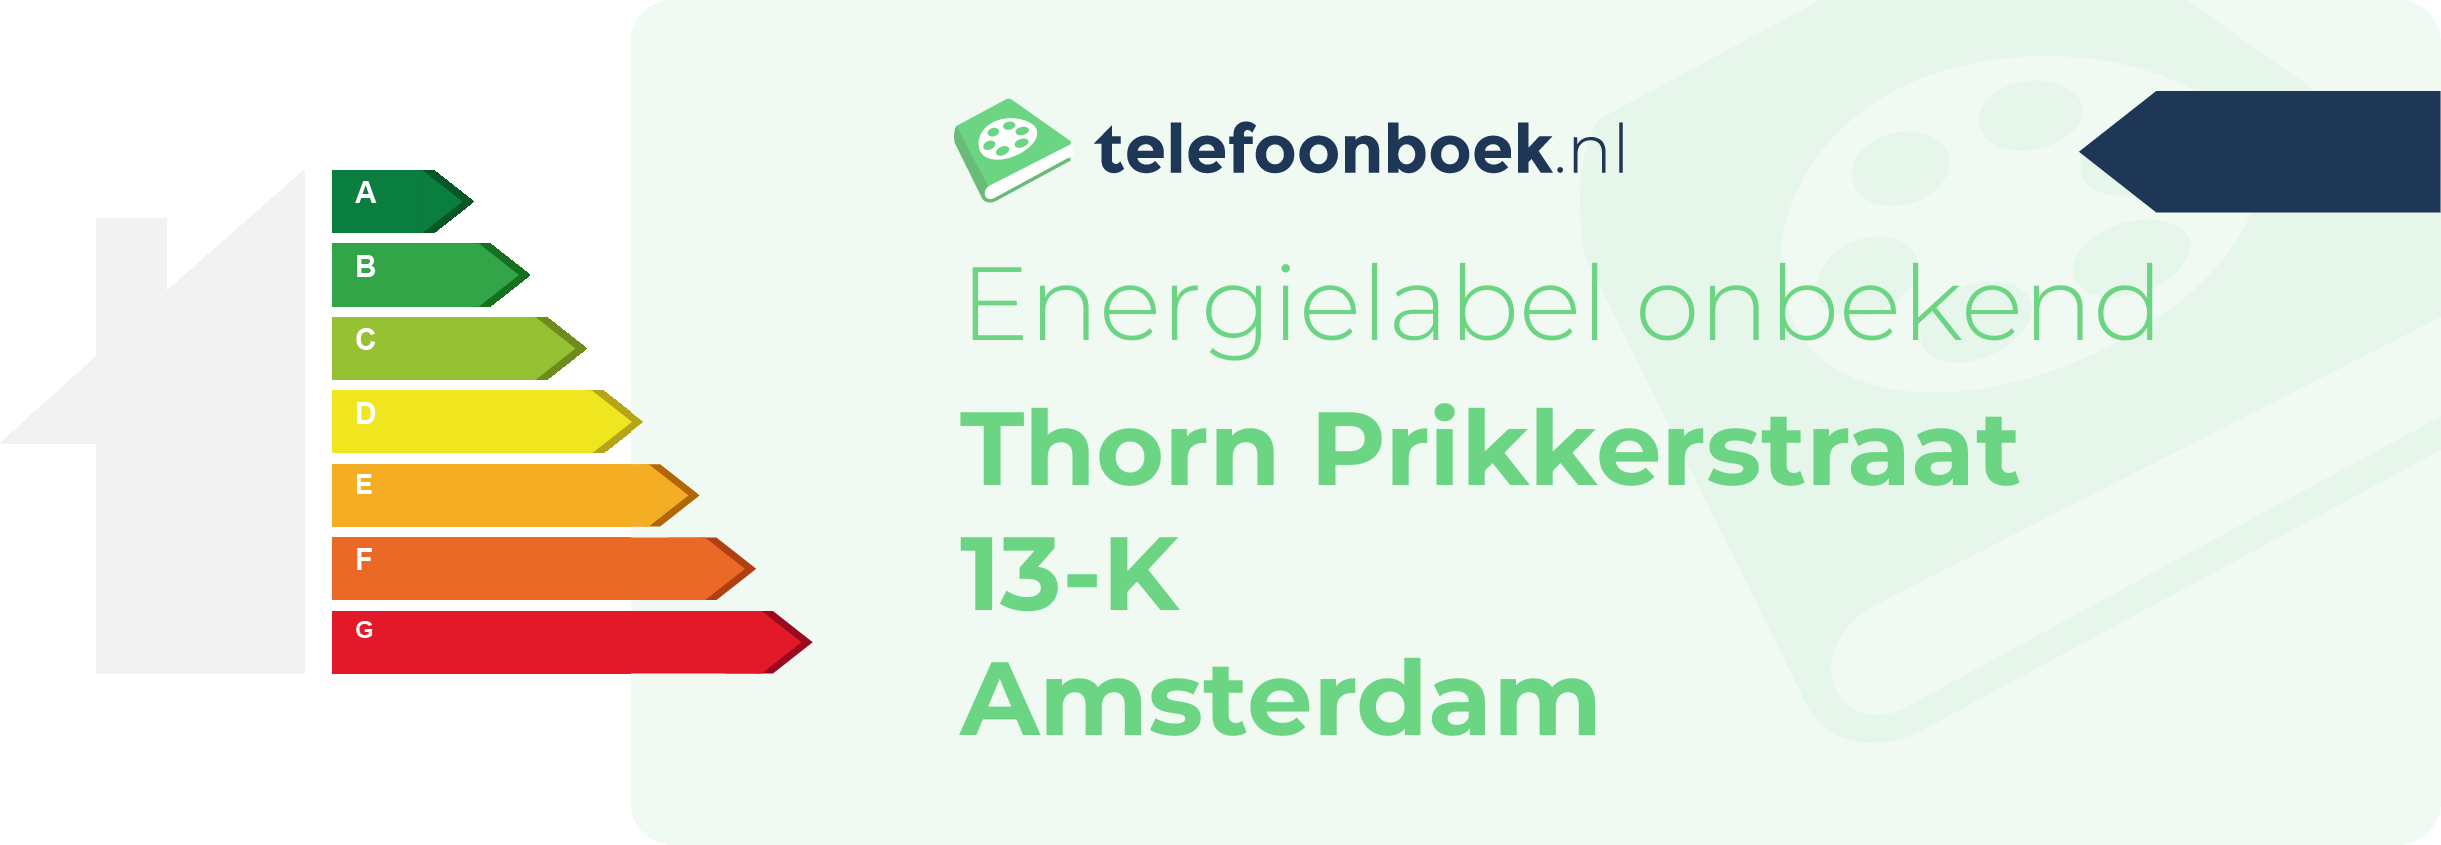 Energielabel Thorn Prikkerstraat 13-K Amsterdam